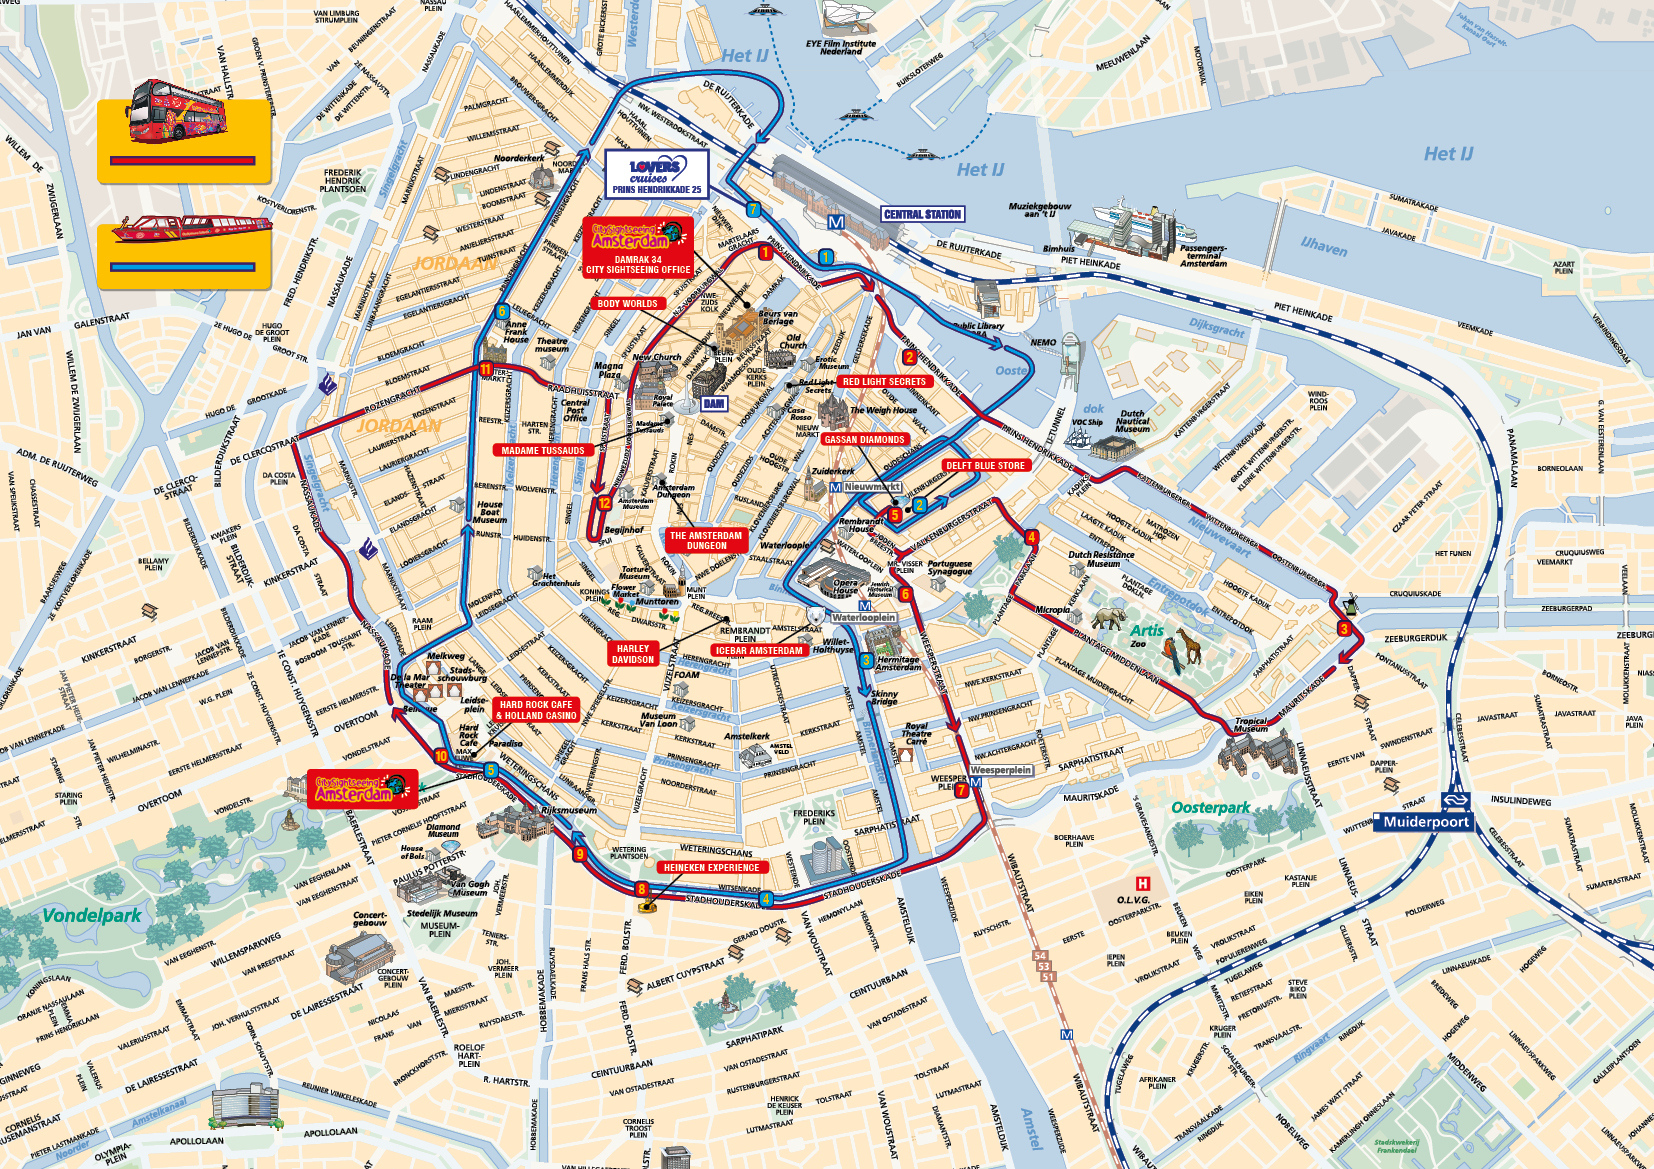 Printable Tourist Map Of Amsterdam Printable Maps